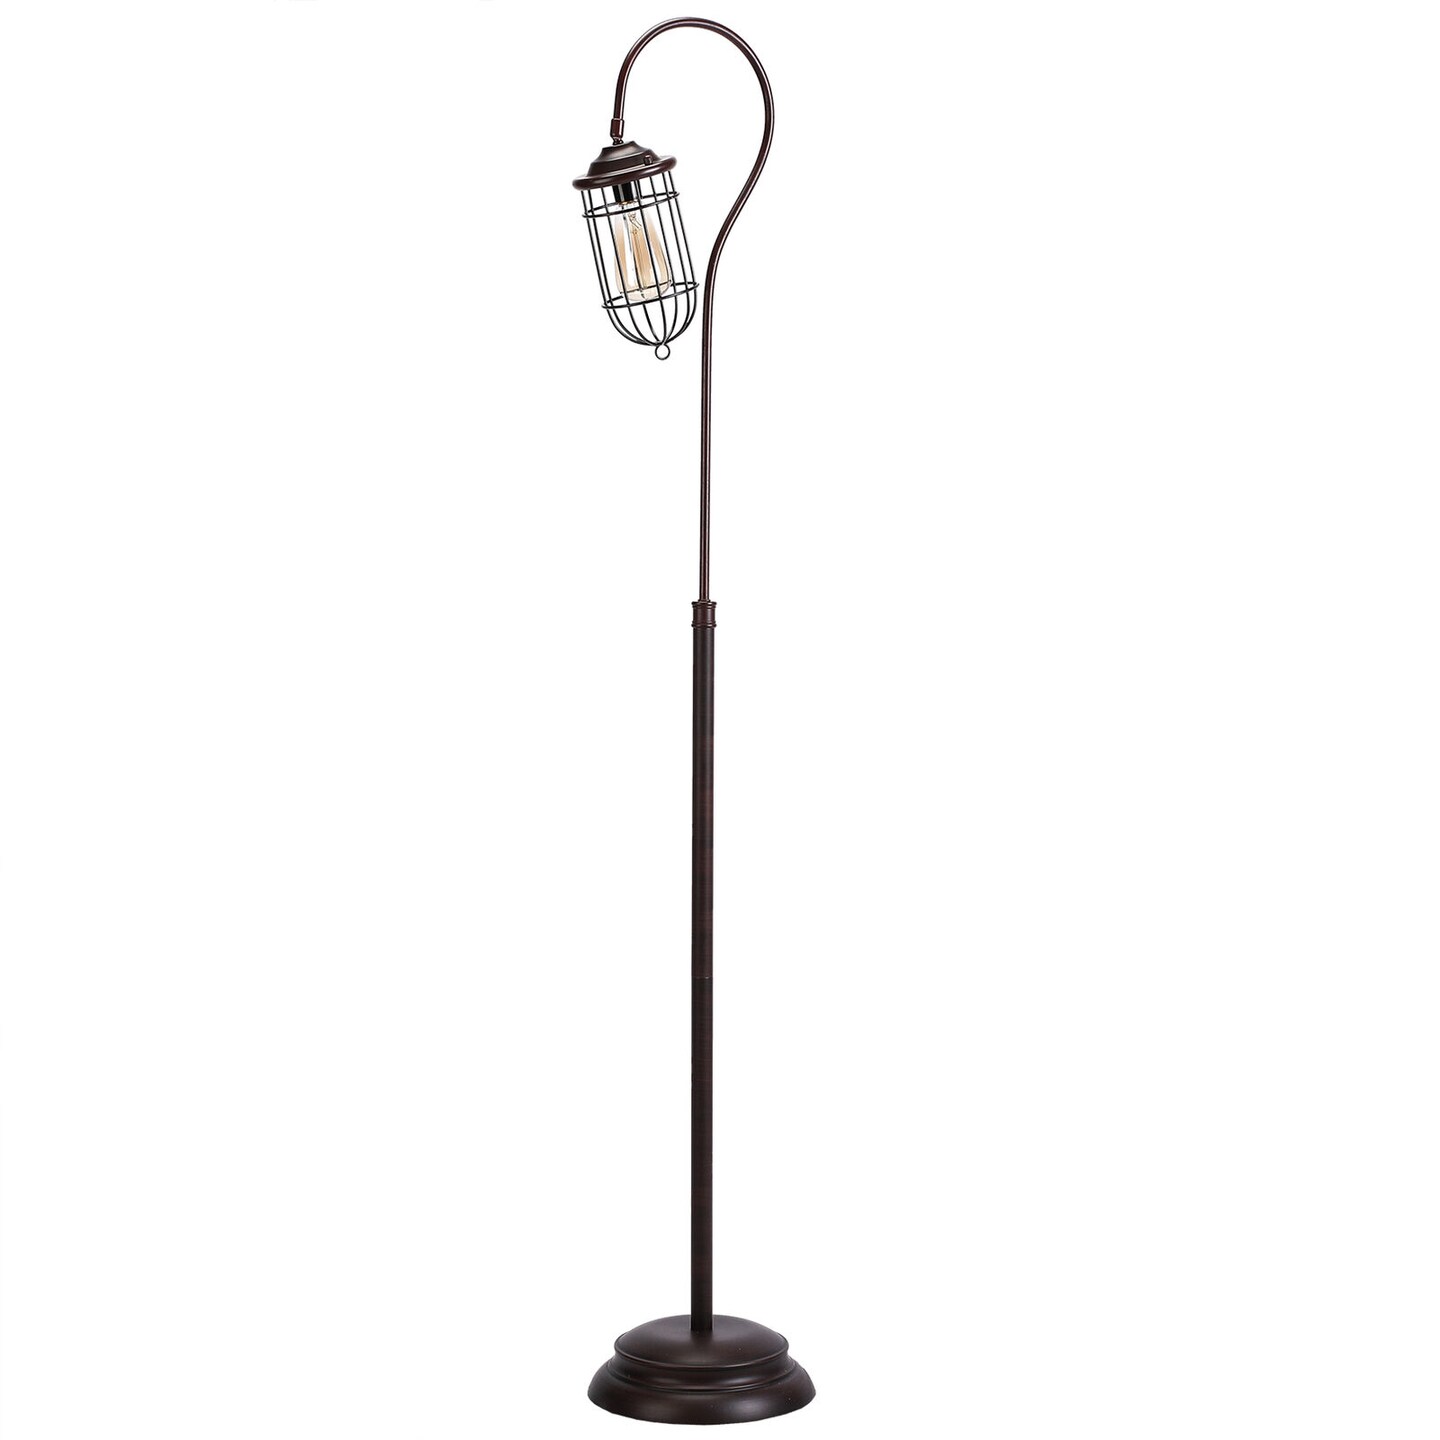 62 Inches Adjustable Standing Floor Lamp